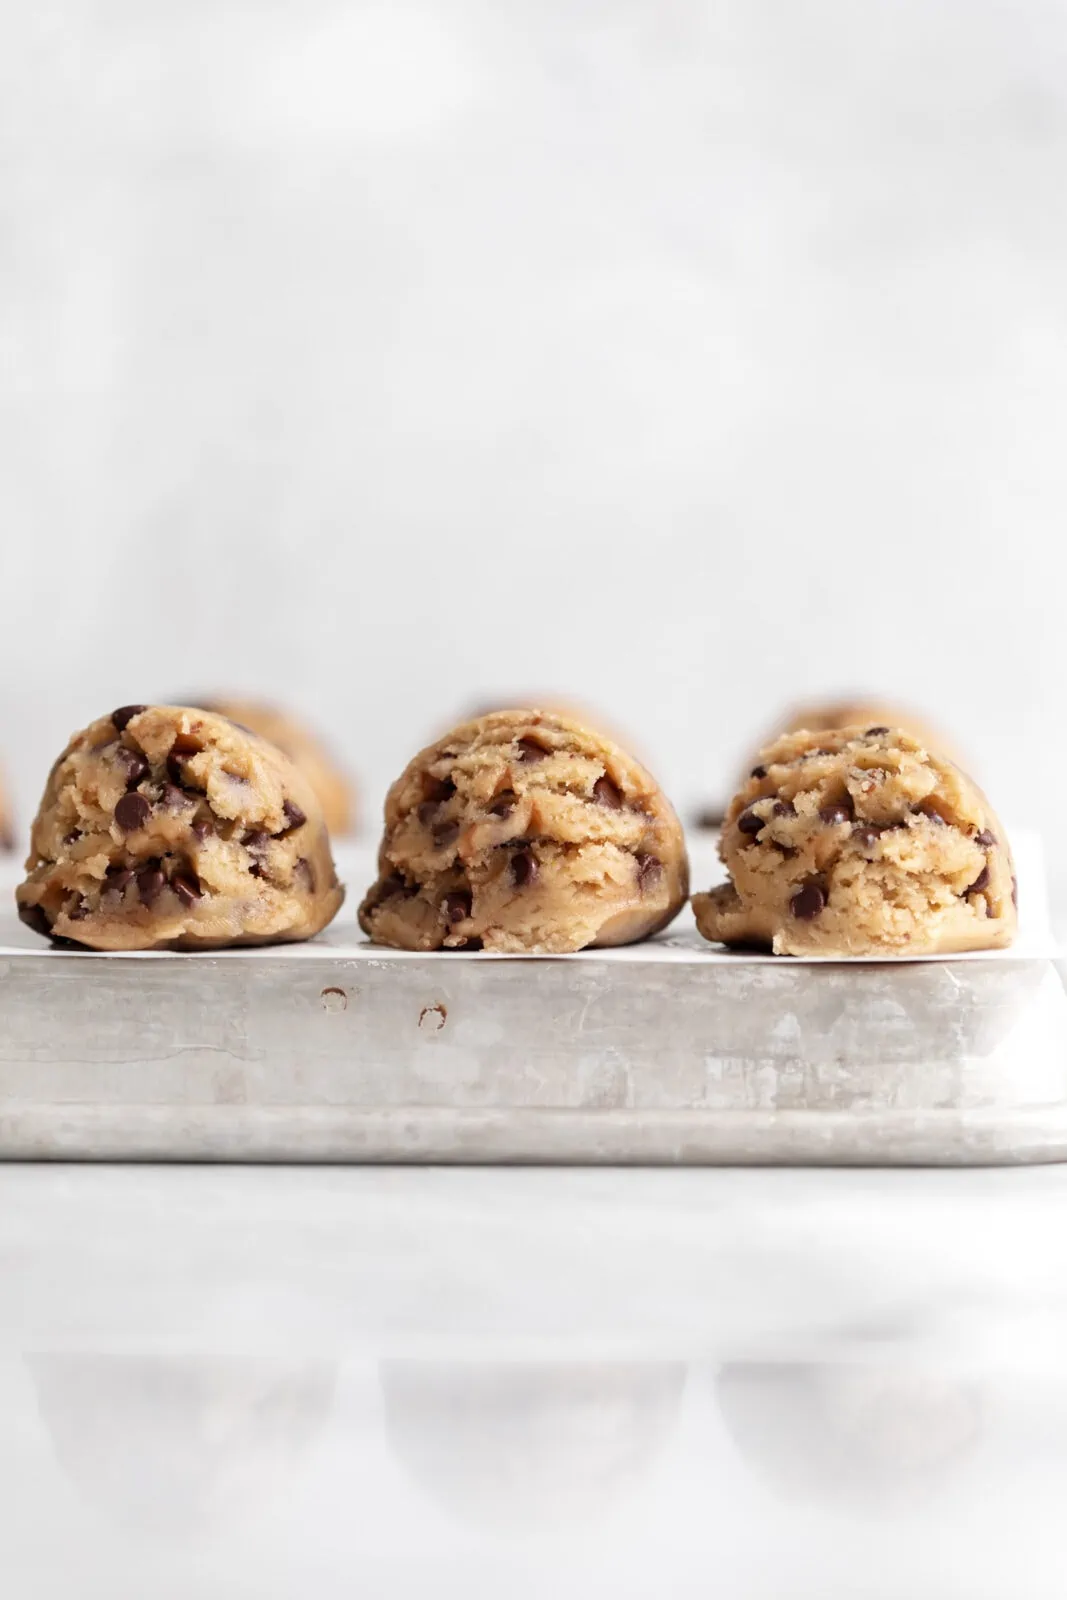 edible cookie dough in dough balls